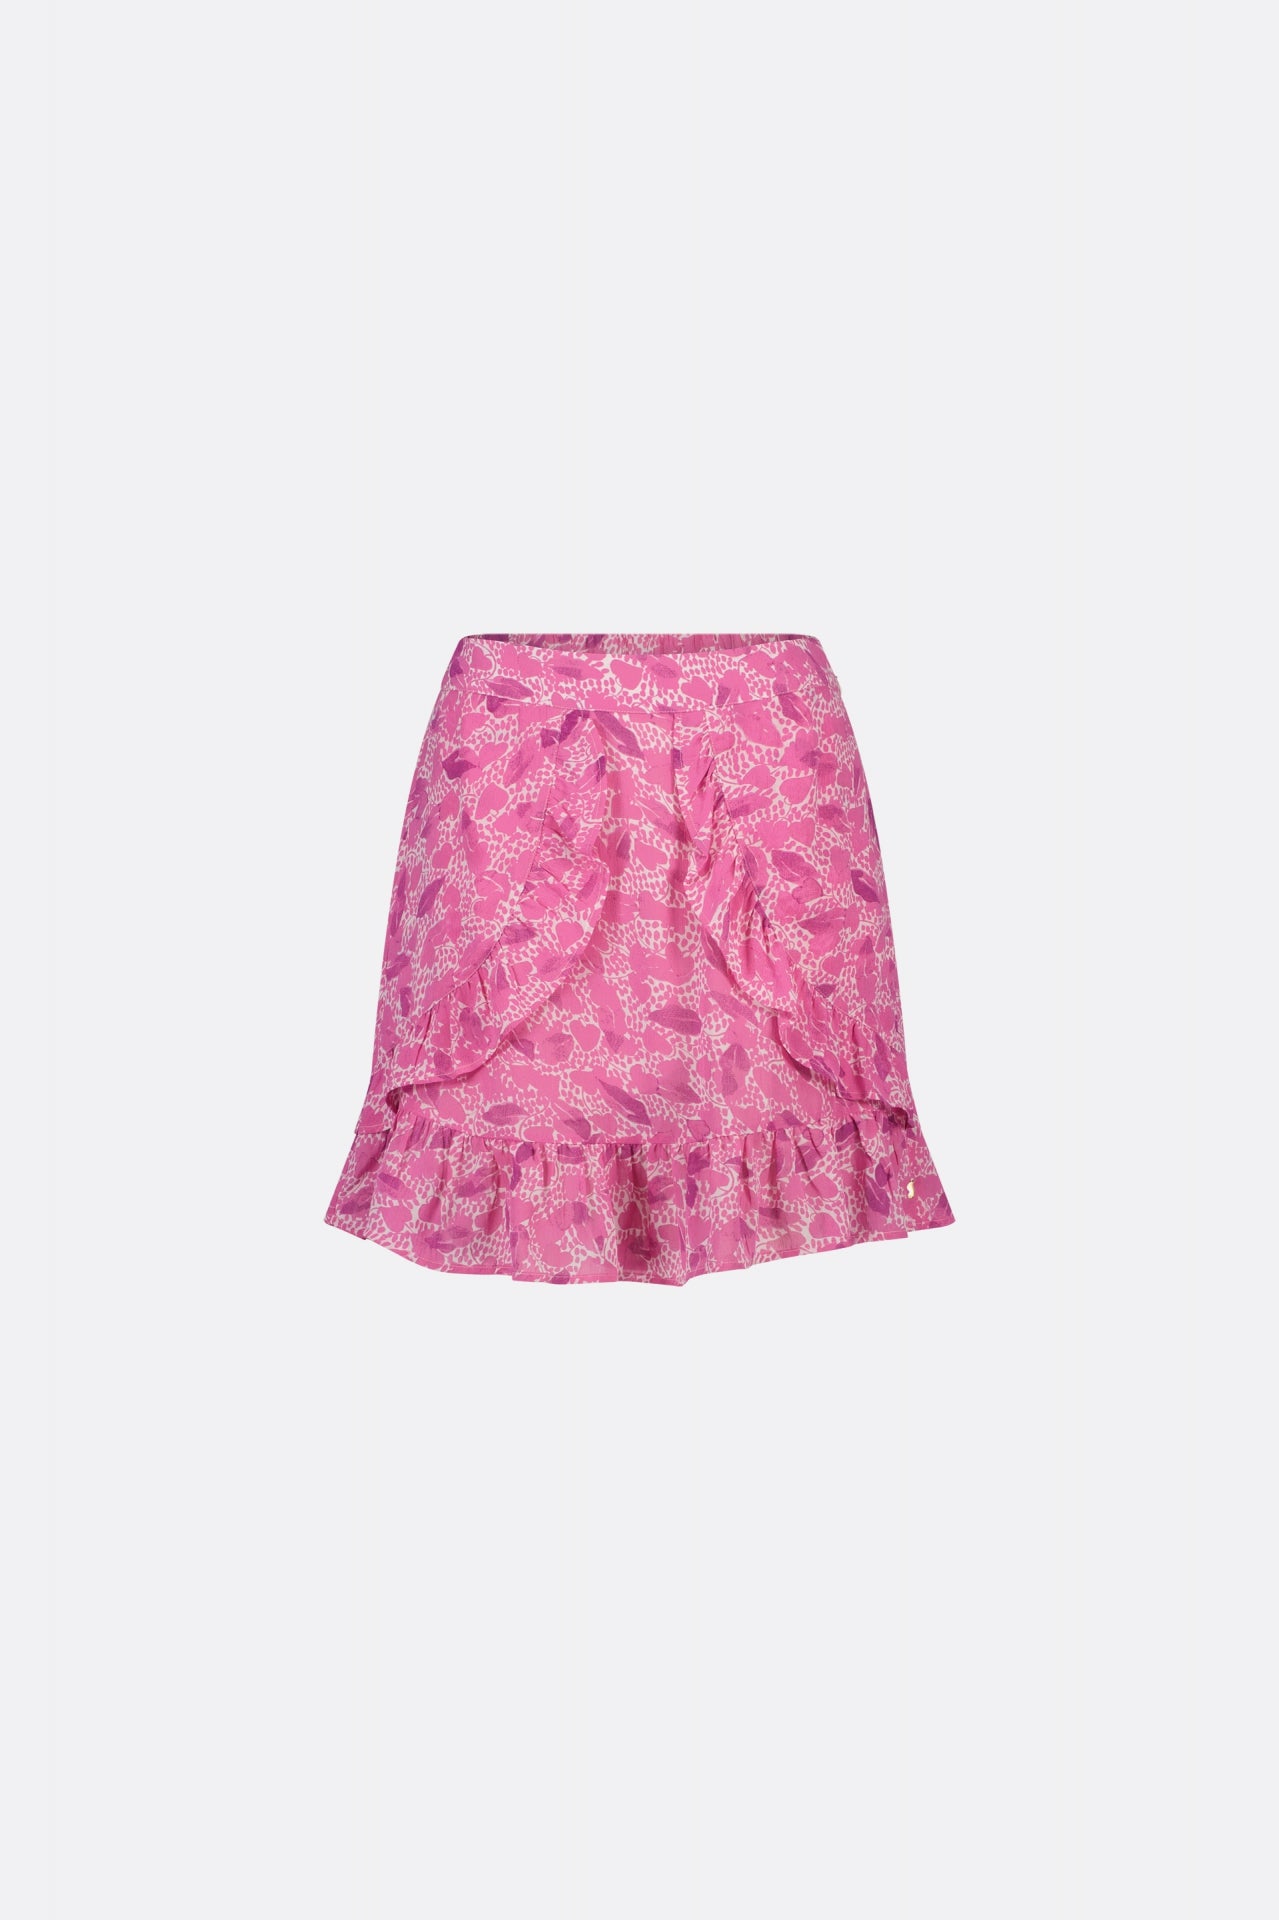 Lulu skirt